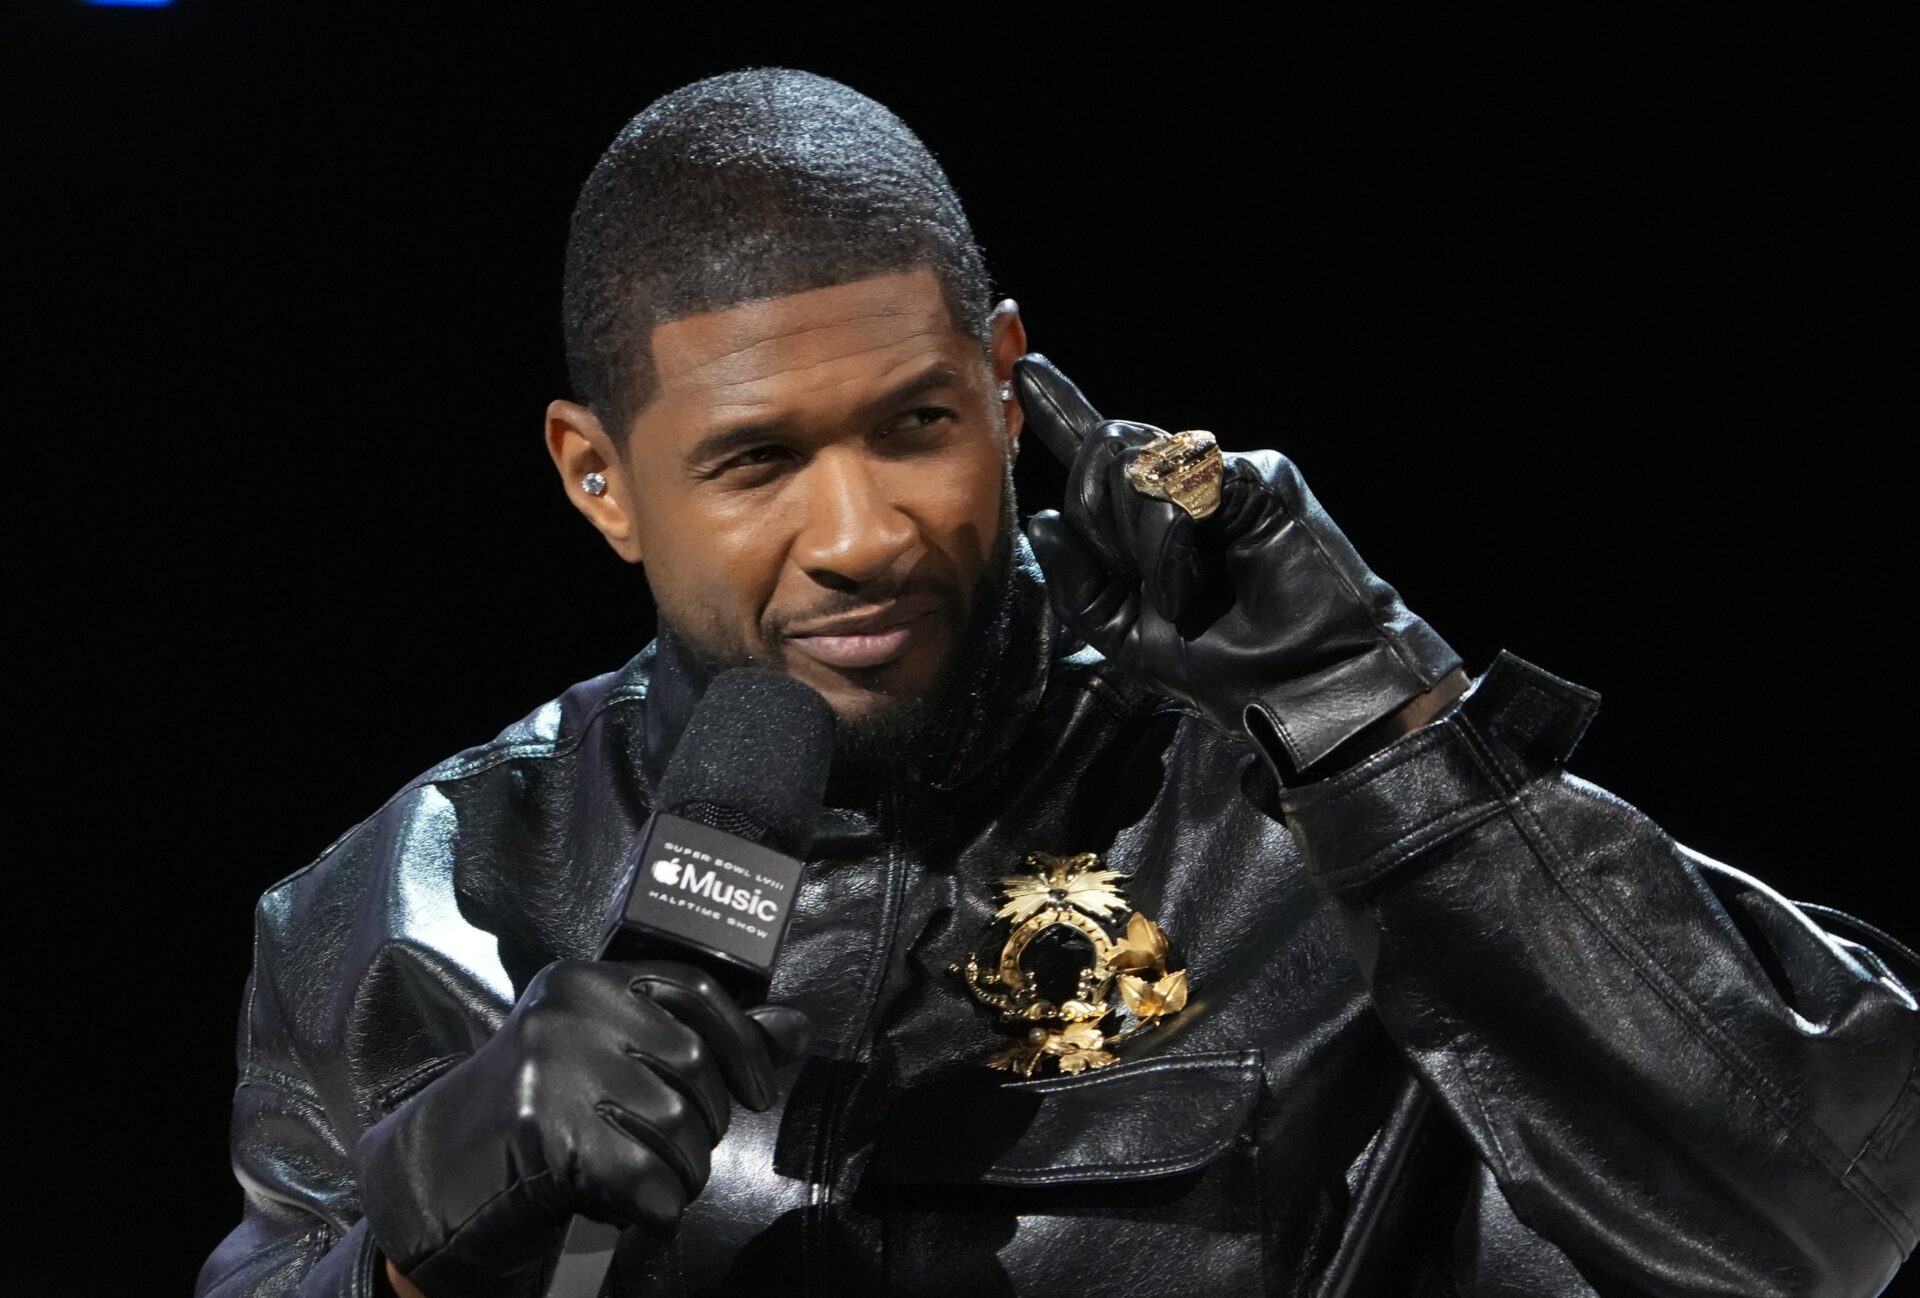 Super Bowl halftime show performer Usher.